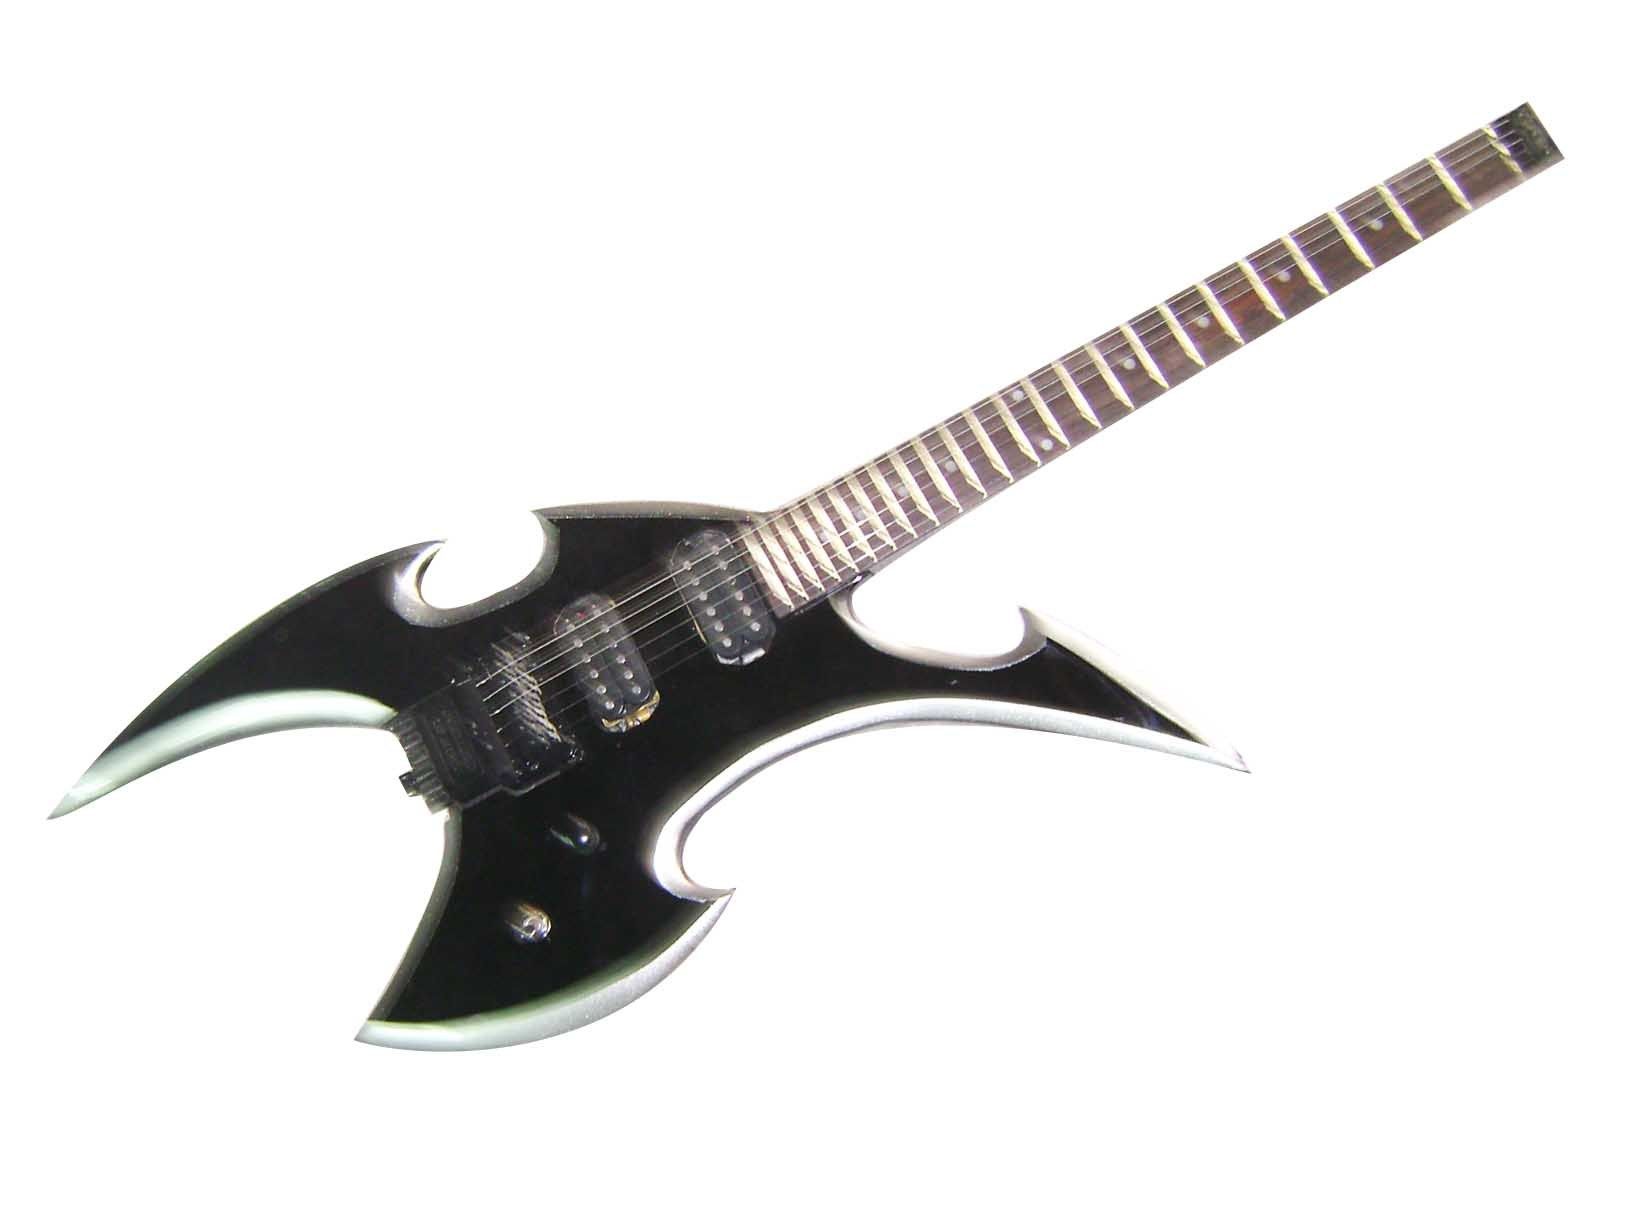 shaped-electric-guitar-shaped-electric-guitar.jpg